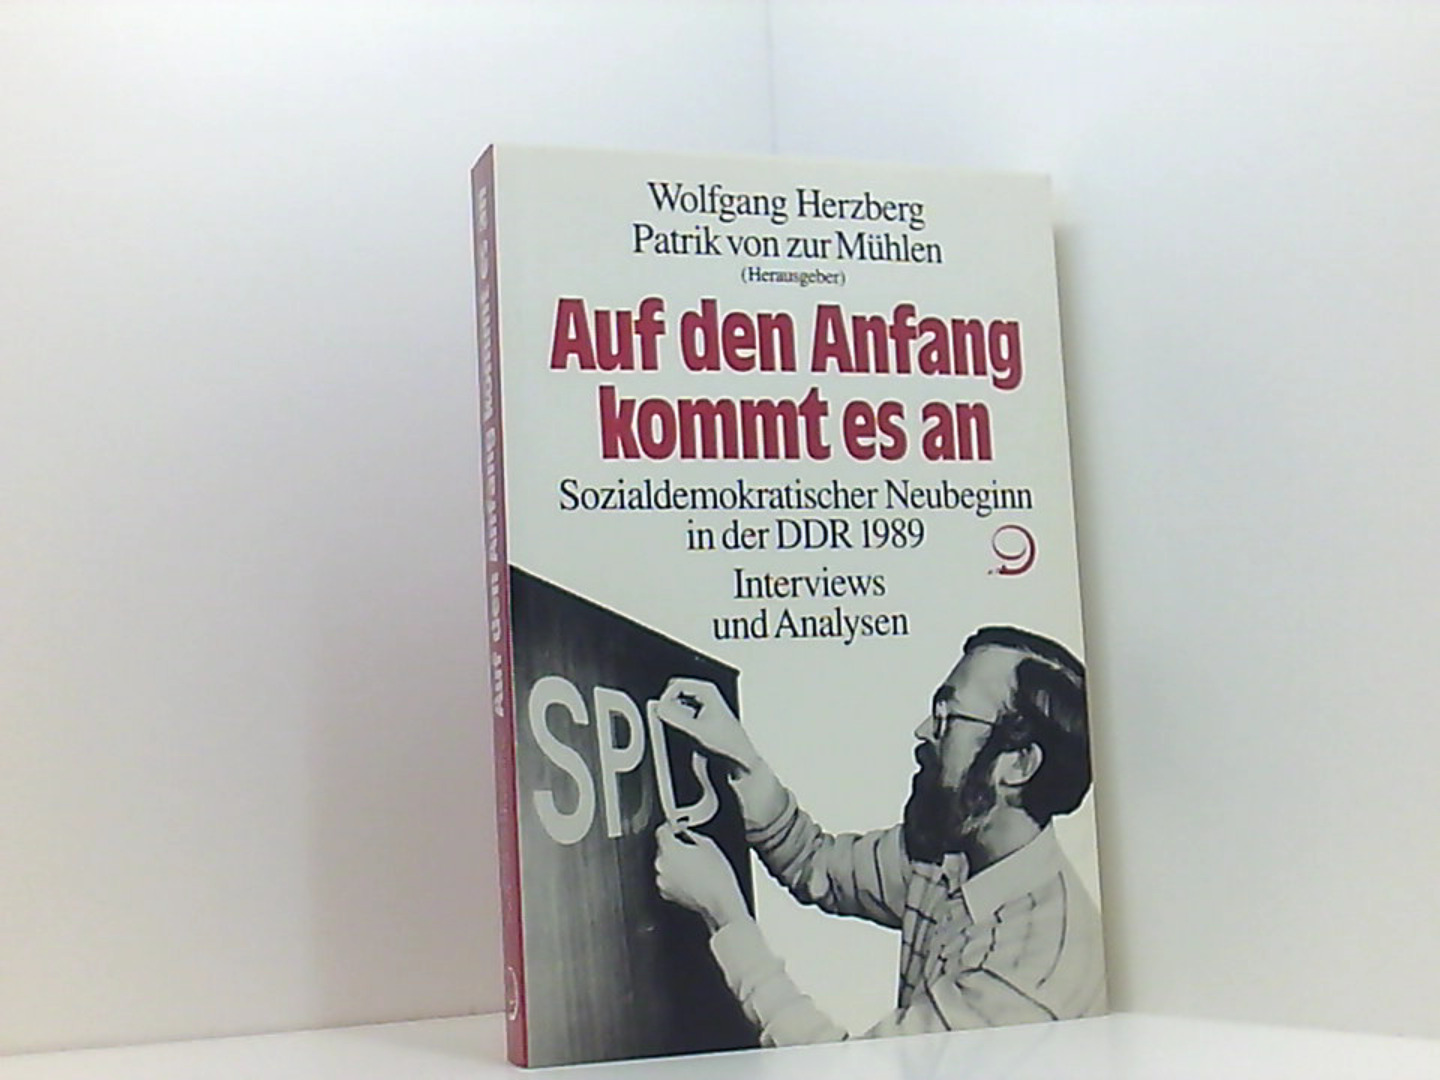 Auf den Anfang kommt es an. Sozialdemokratischer Neubeginn in der DDR 1989. Interviews und Analysen - Herzberg Wolfgang; Zur Mühlen Patrik von, (Herausgeber)